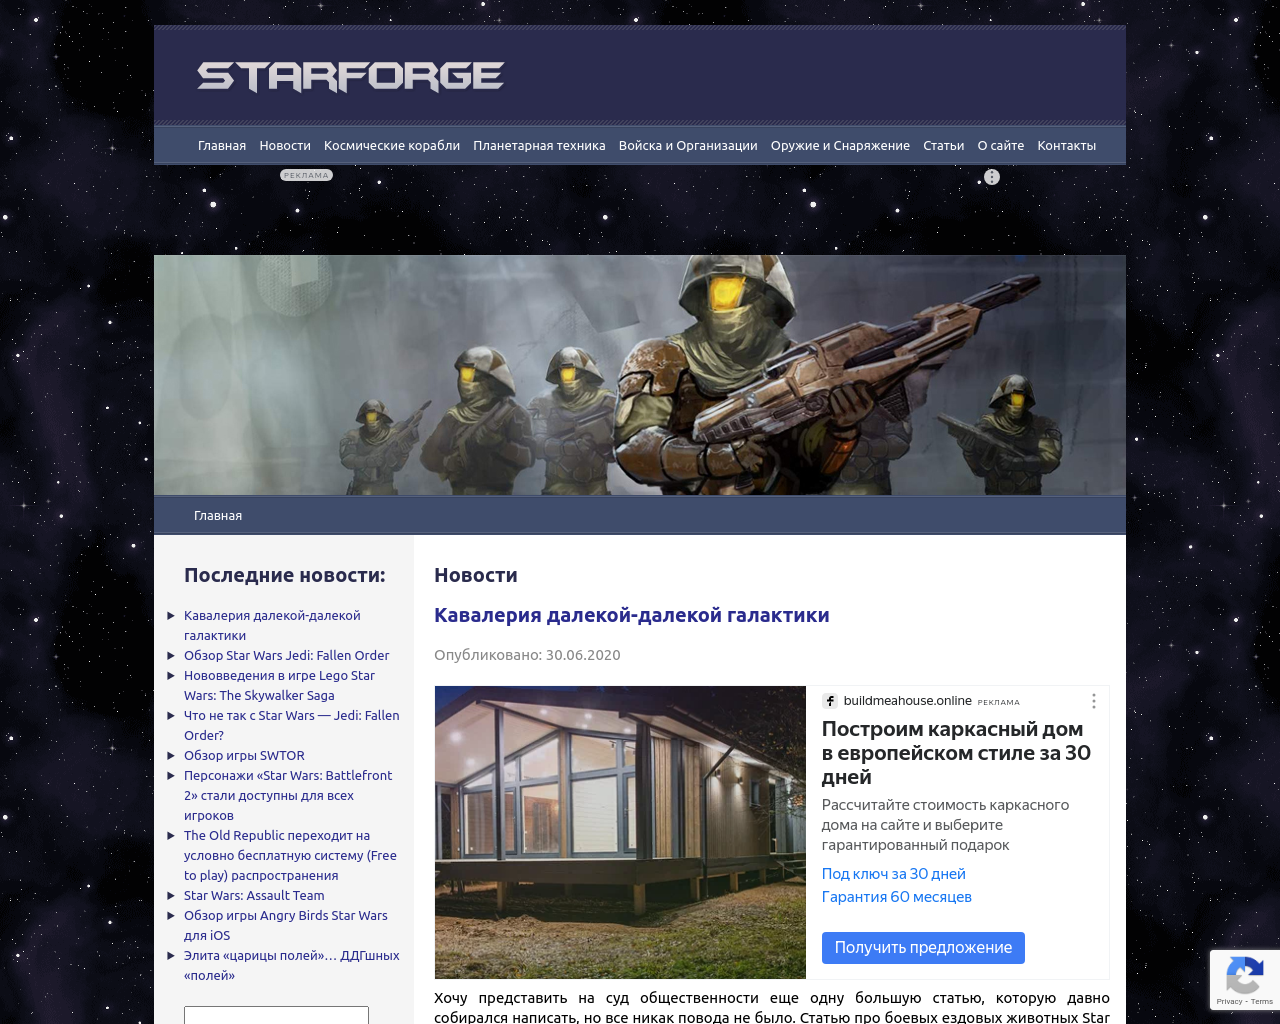 starforge.info